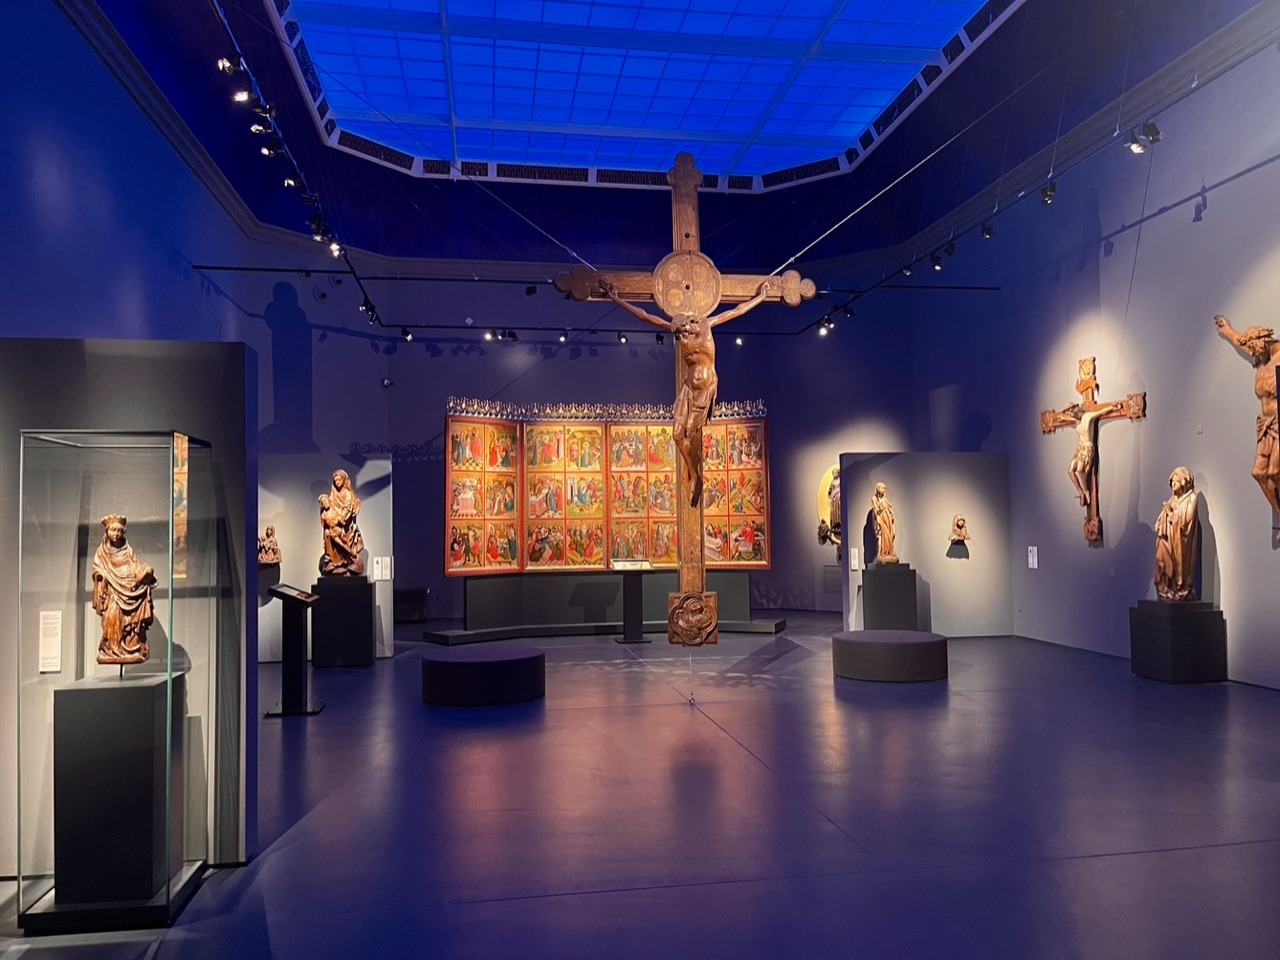 Pomieszczenie z dużym podwieszonym do sufitu krzyżem, na ścianach i w gablotach figury religijne